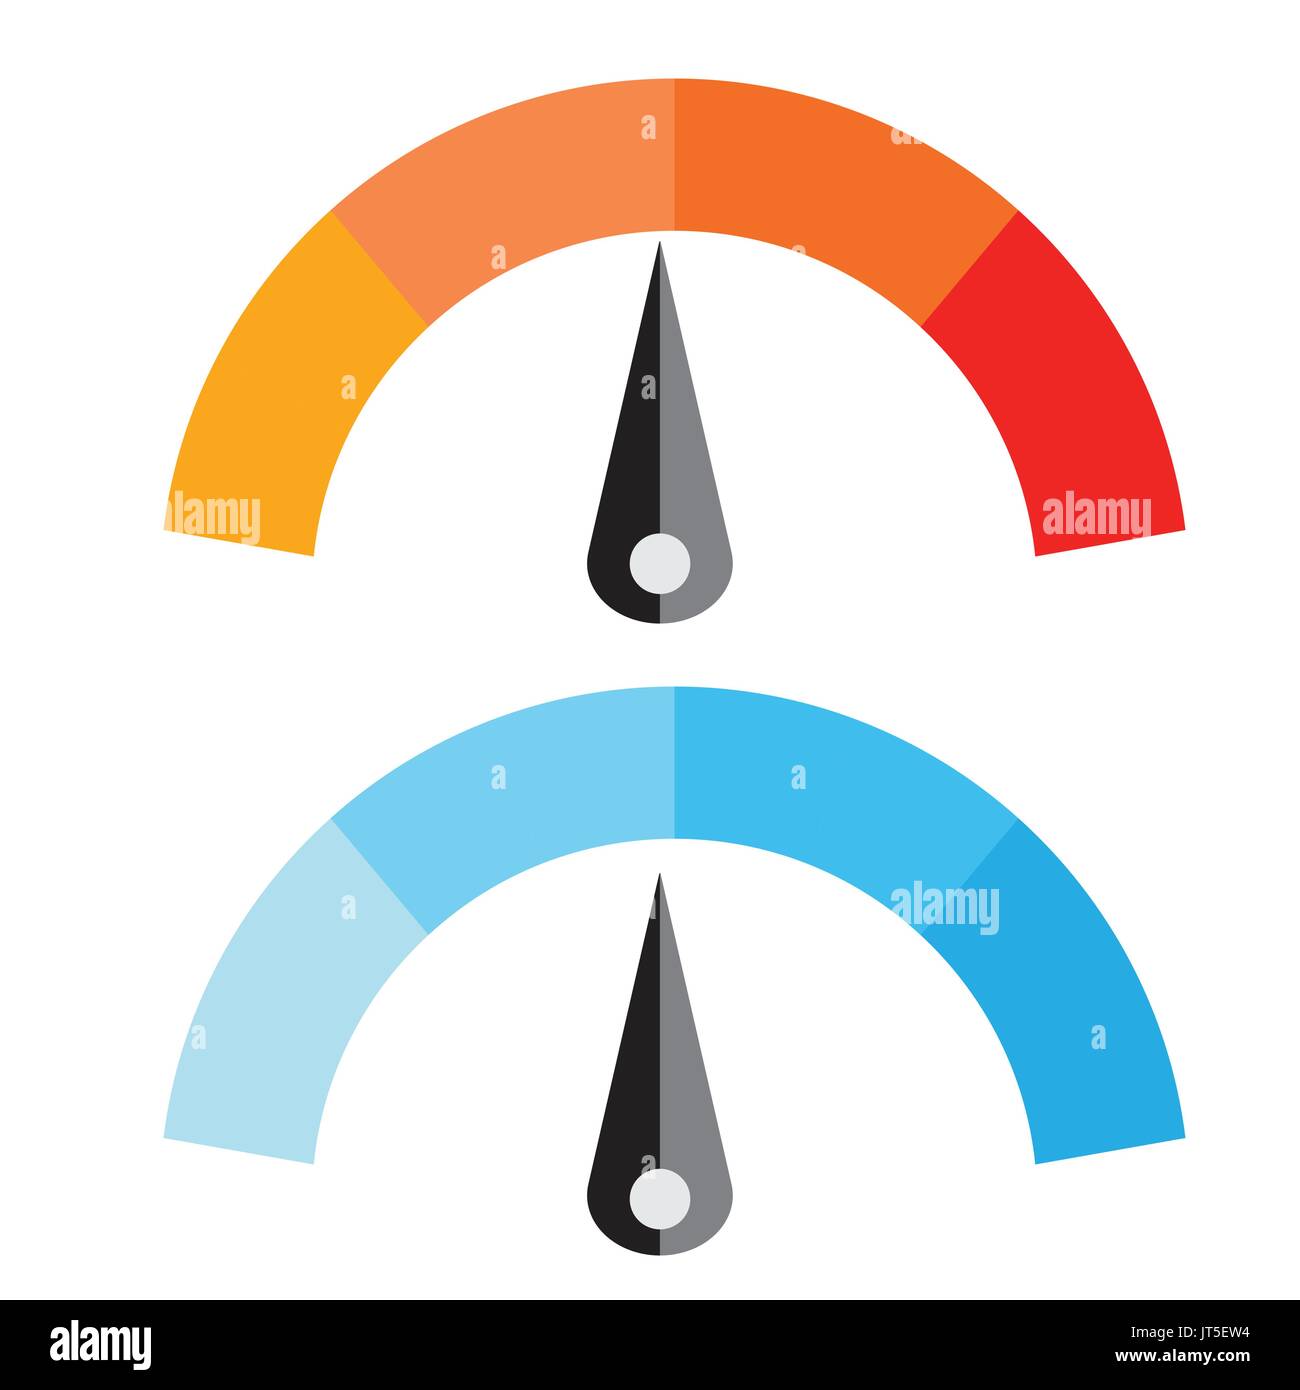 Illustrazione Vettoriale del misuratore di temperatura con caldi e livelli fantastici, di tipo piatto, EPS10. Illustrazione Vettoriale